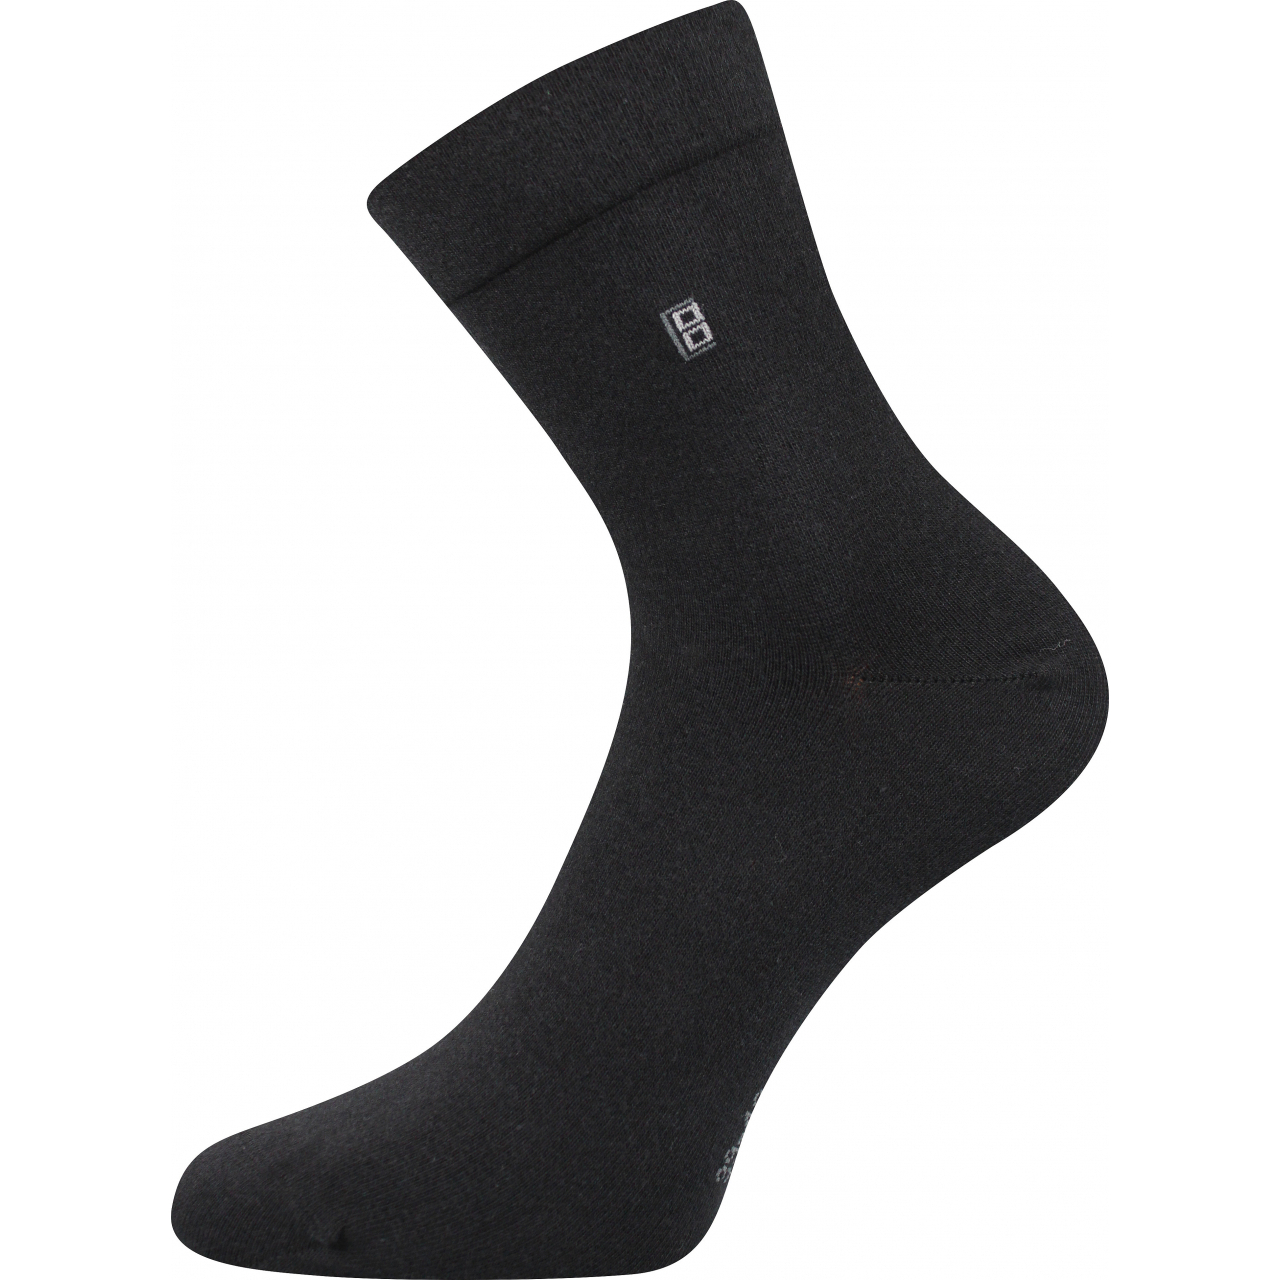 Ponožky pánské společenské Lonka Dagles - černé, 43-46